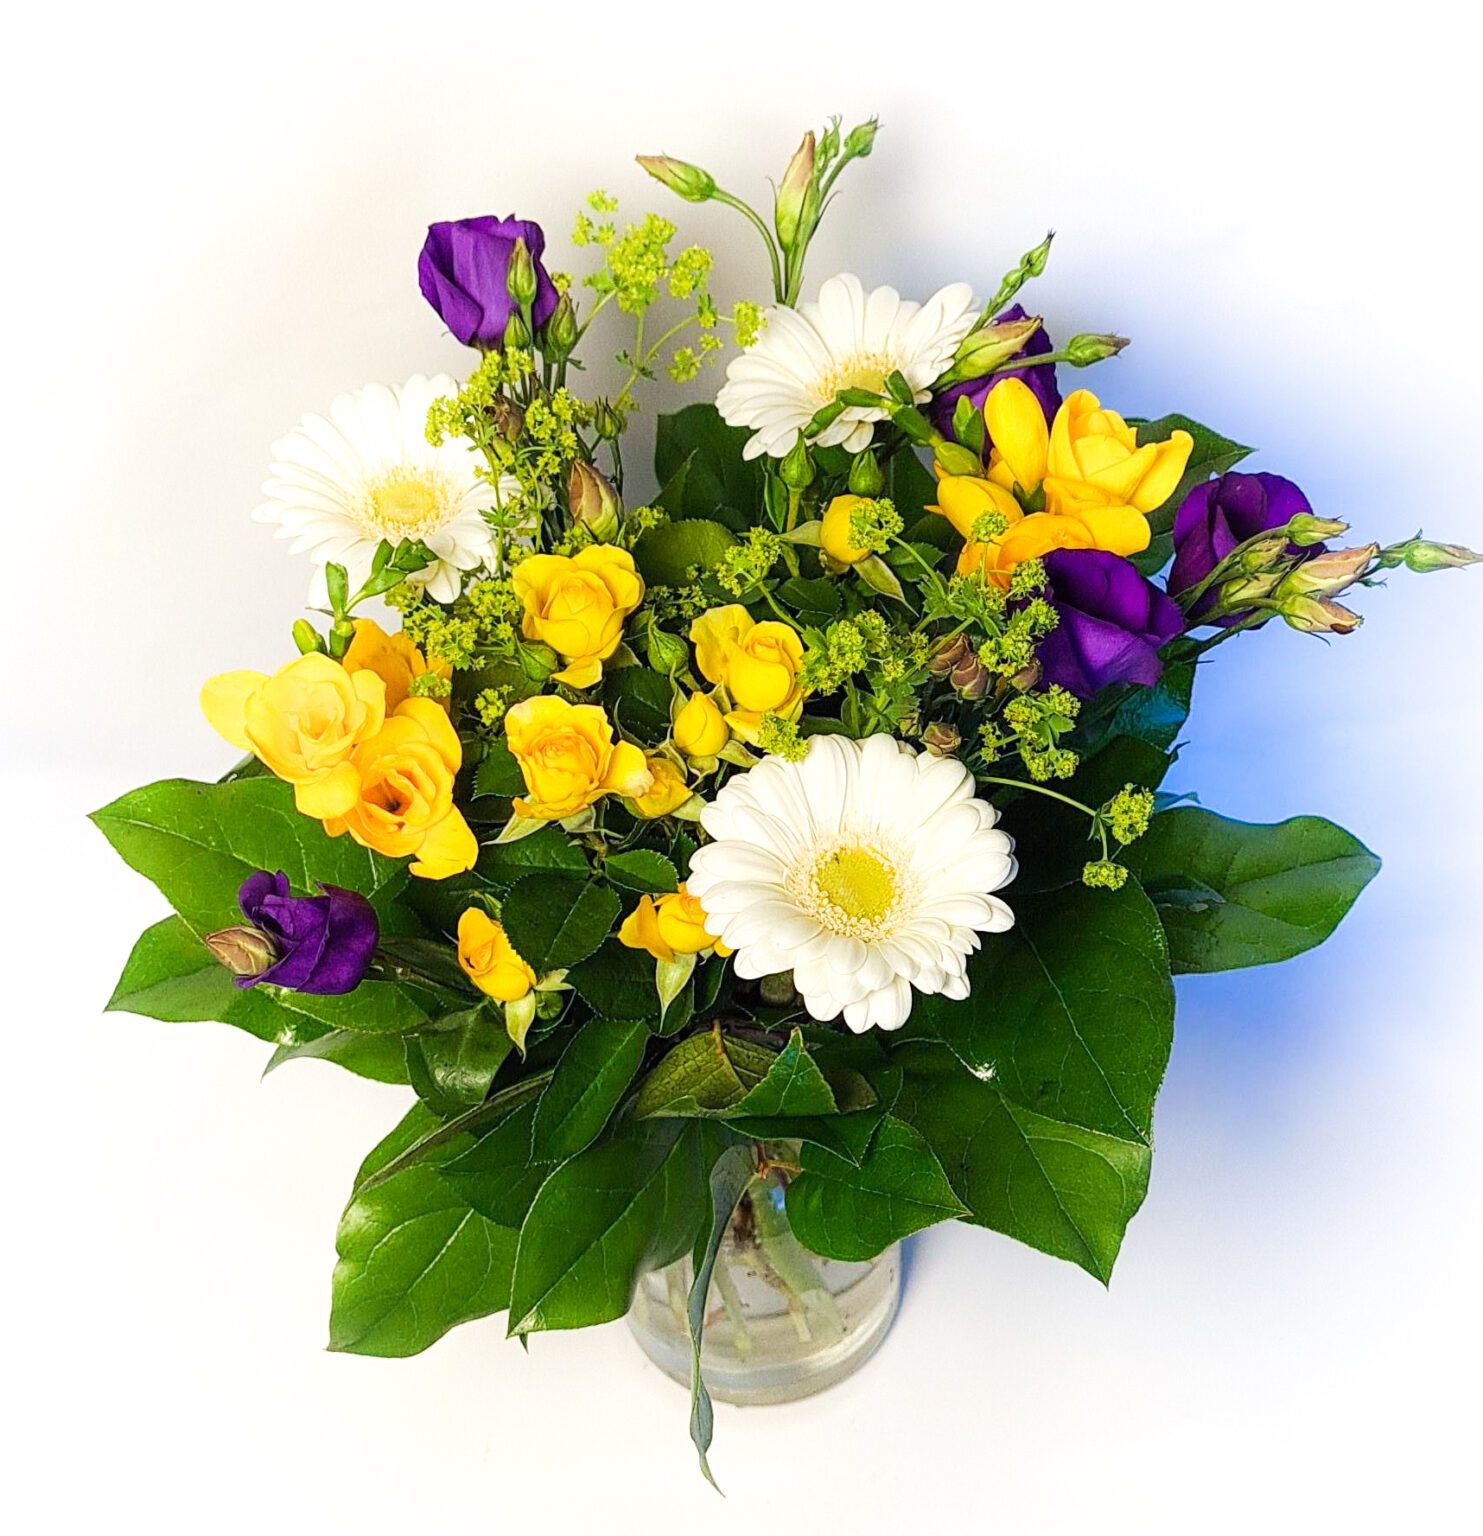 Födelsedag 3 – Grattis-bukett i gult och lila – Lisas Blommor